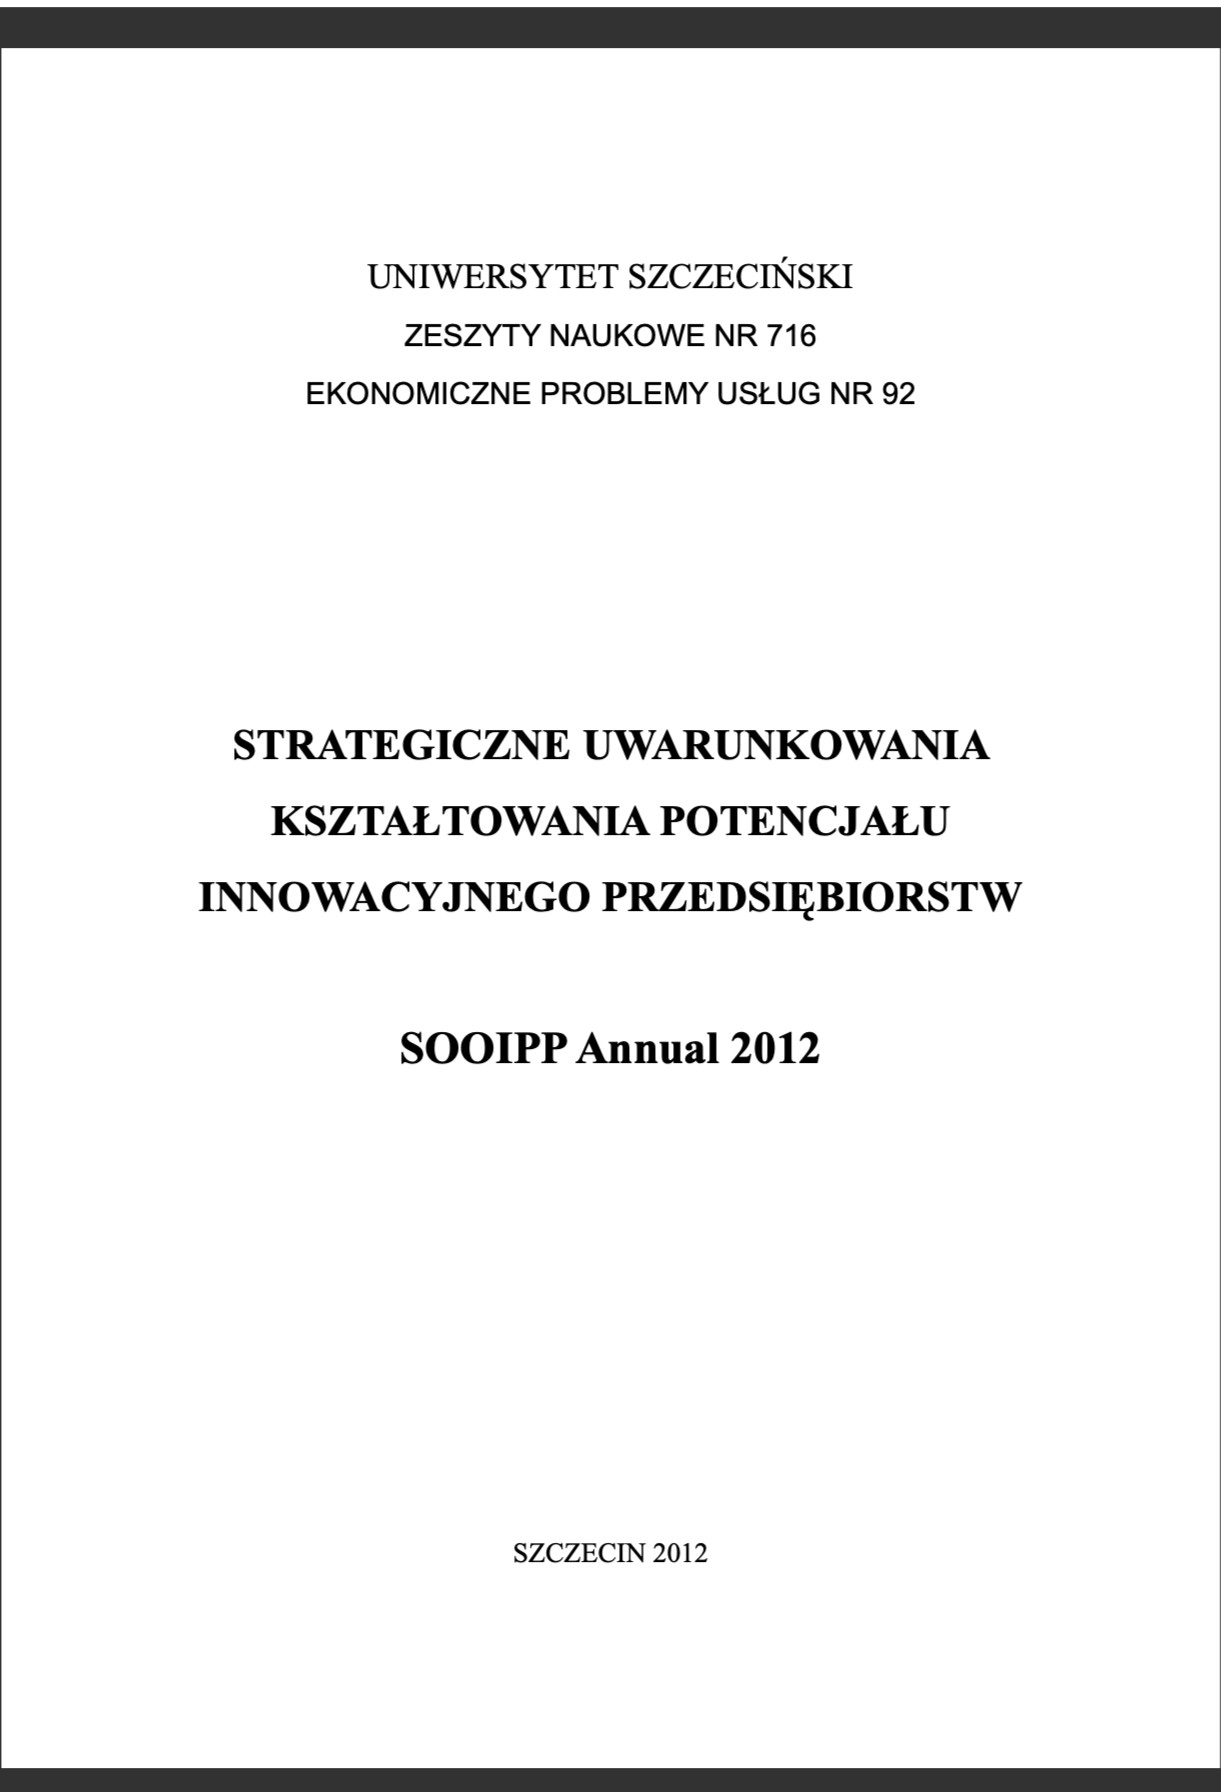 Strategiczne uwarunkowania kształtowania potencjału innowacyjnego przedsiębiorstw SOOIPP Annual 2012